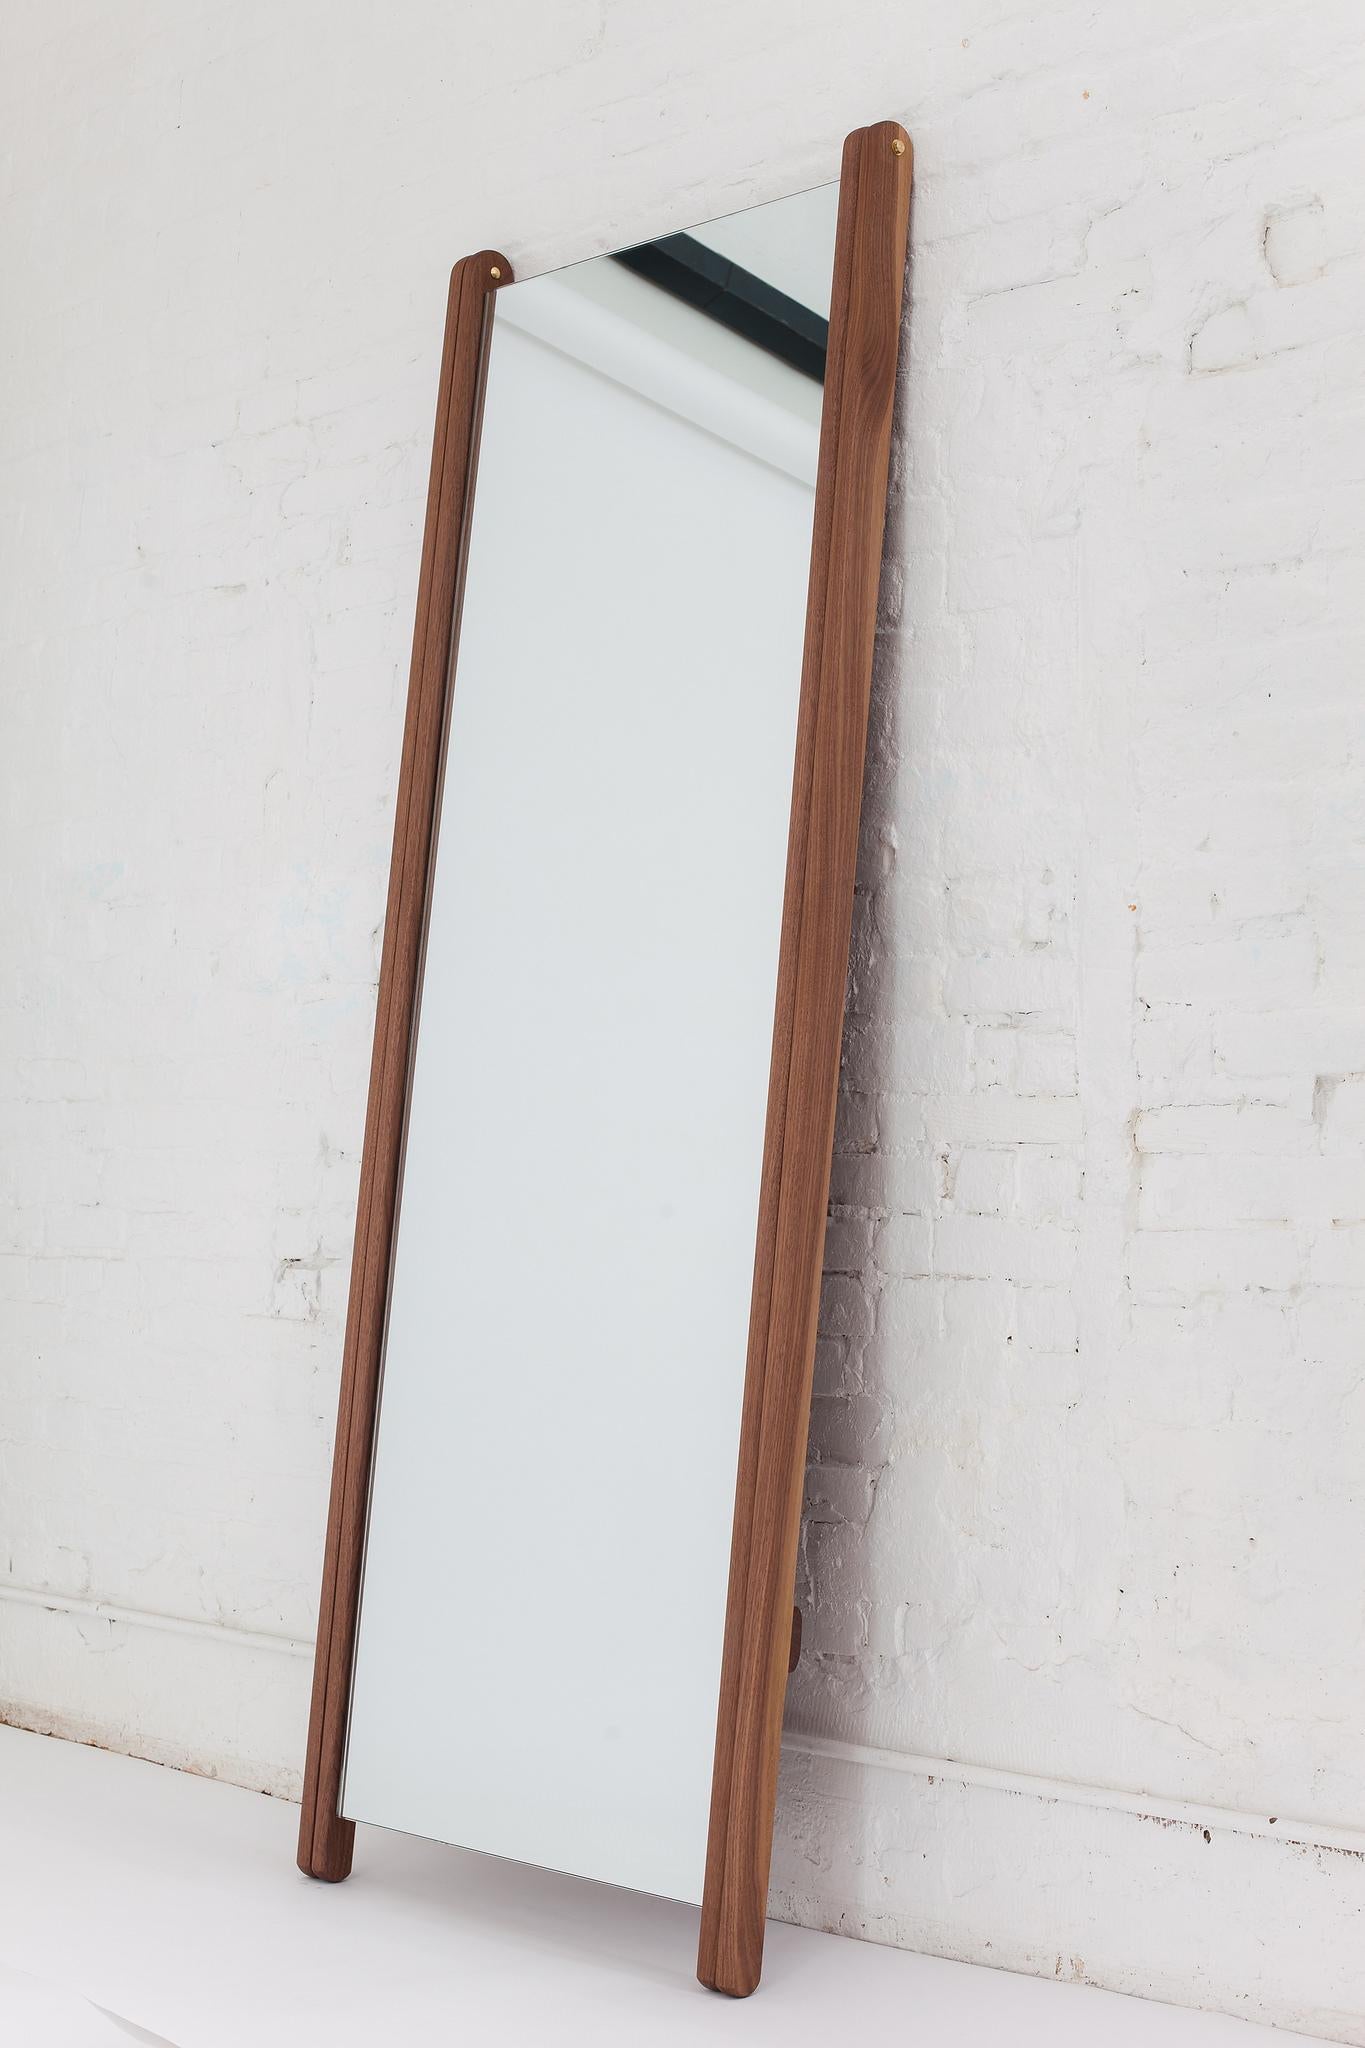 Der Libertine-Spiegel ist groß und luxuriös und steht leicht auf seinen spitz zulaufenden Beinen. Lassen Sie ihn in der 